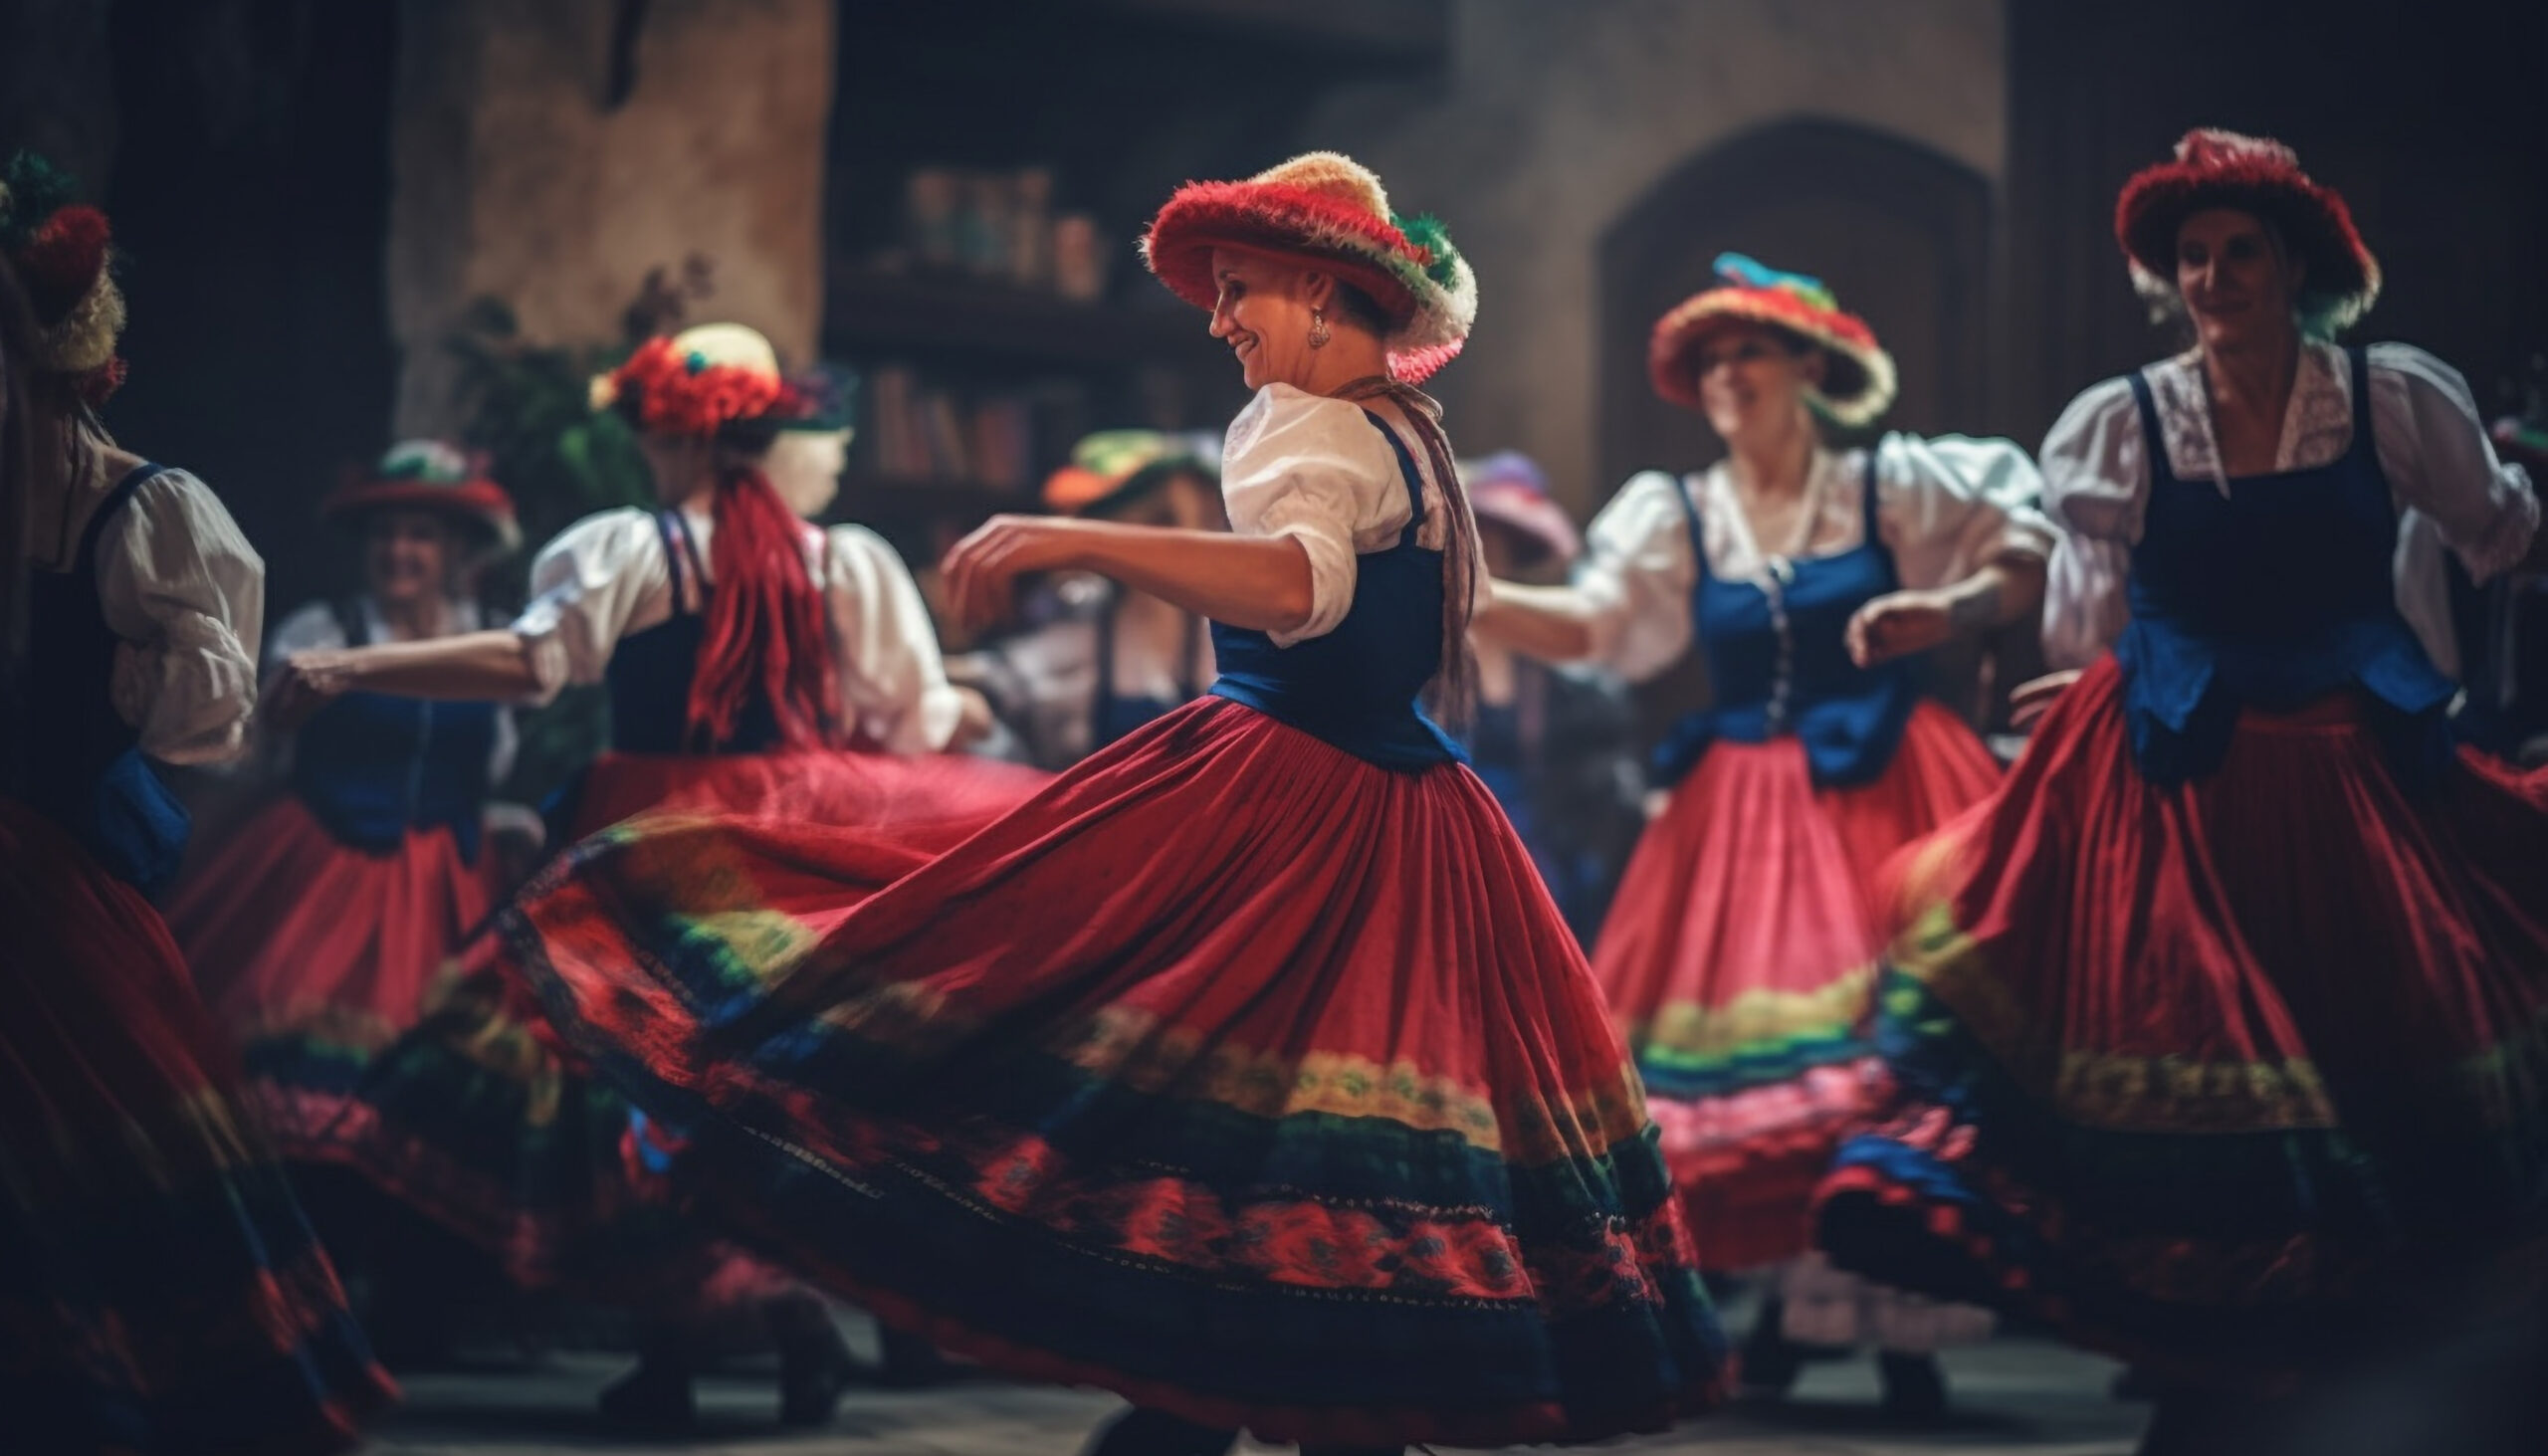 Colombianas con ropa tradicional bailando una danza típica de Colombia